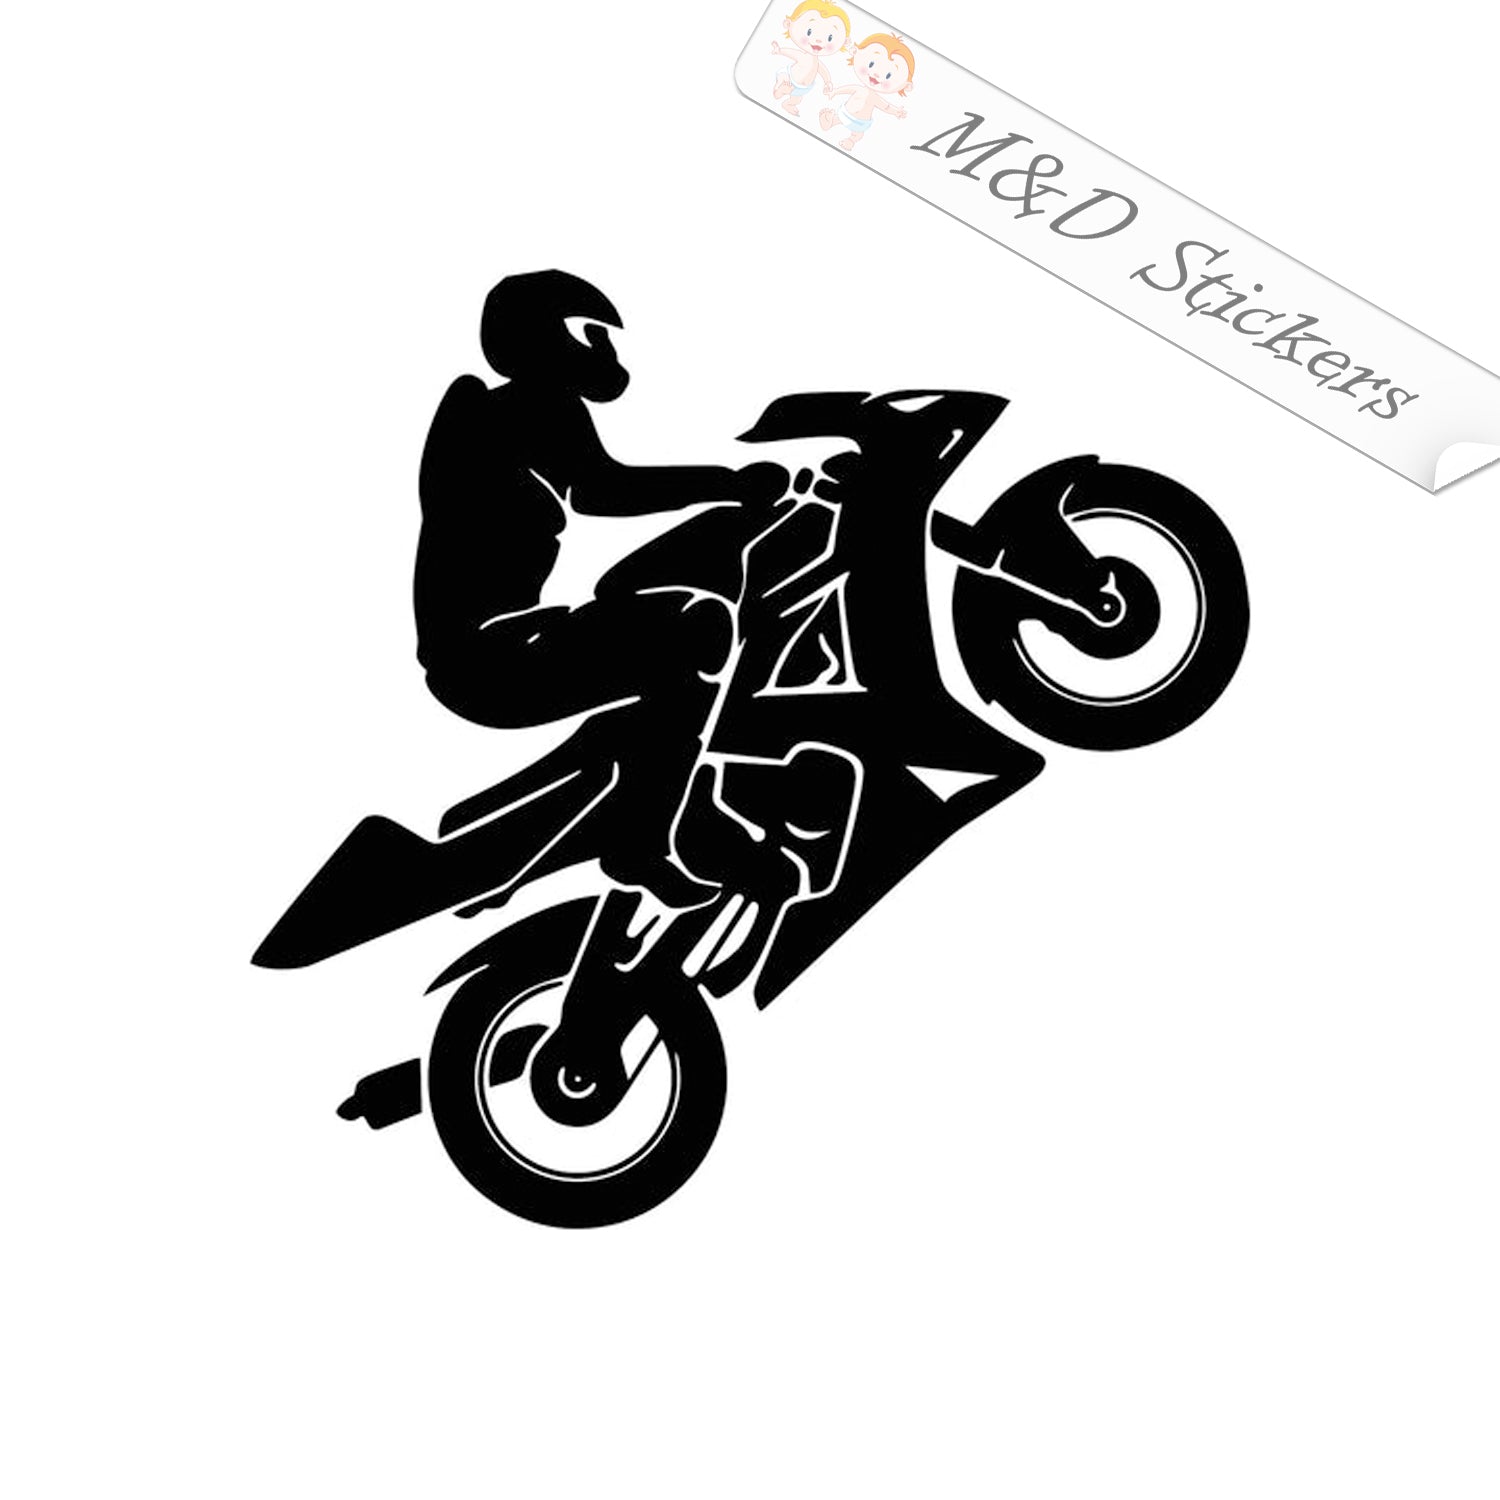 Racer dog logo stock vector. Illustration of bike, badge - 222391454